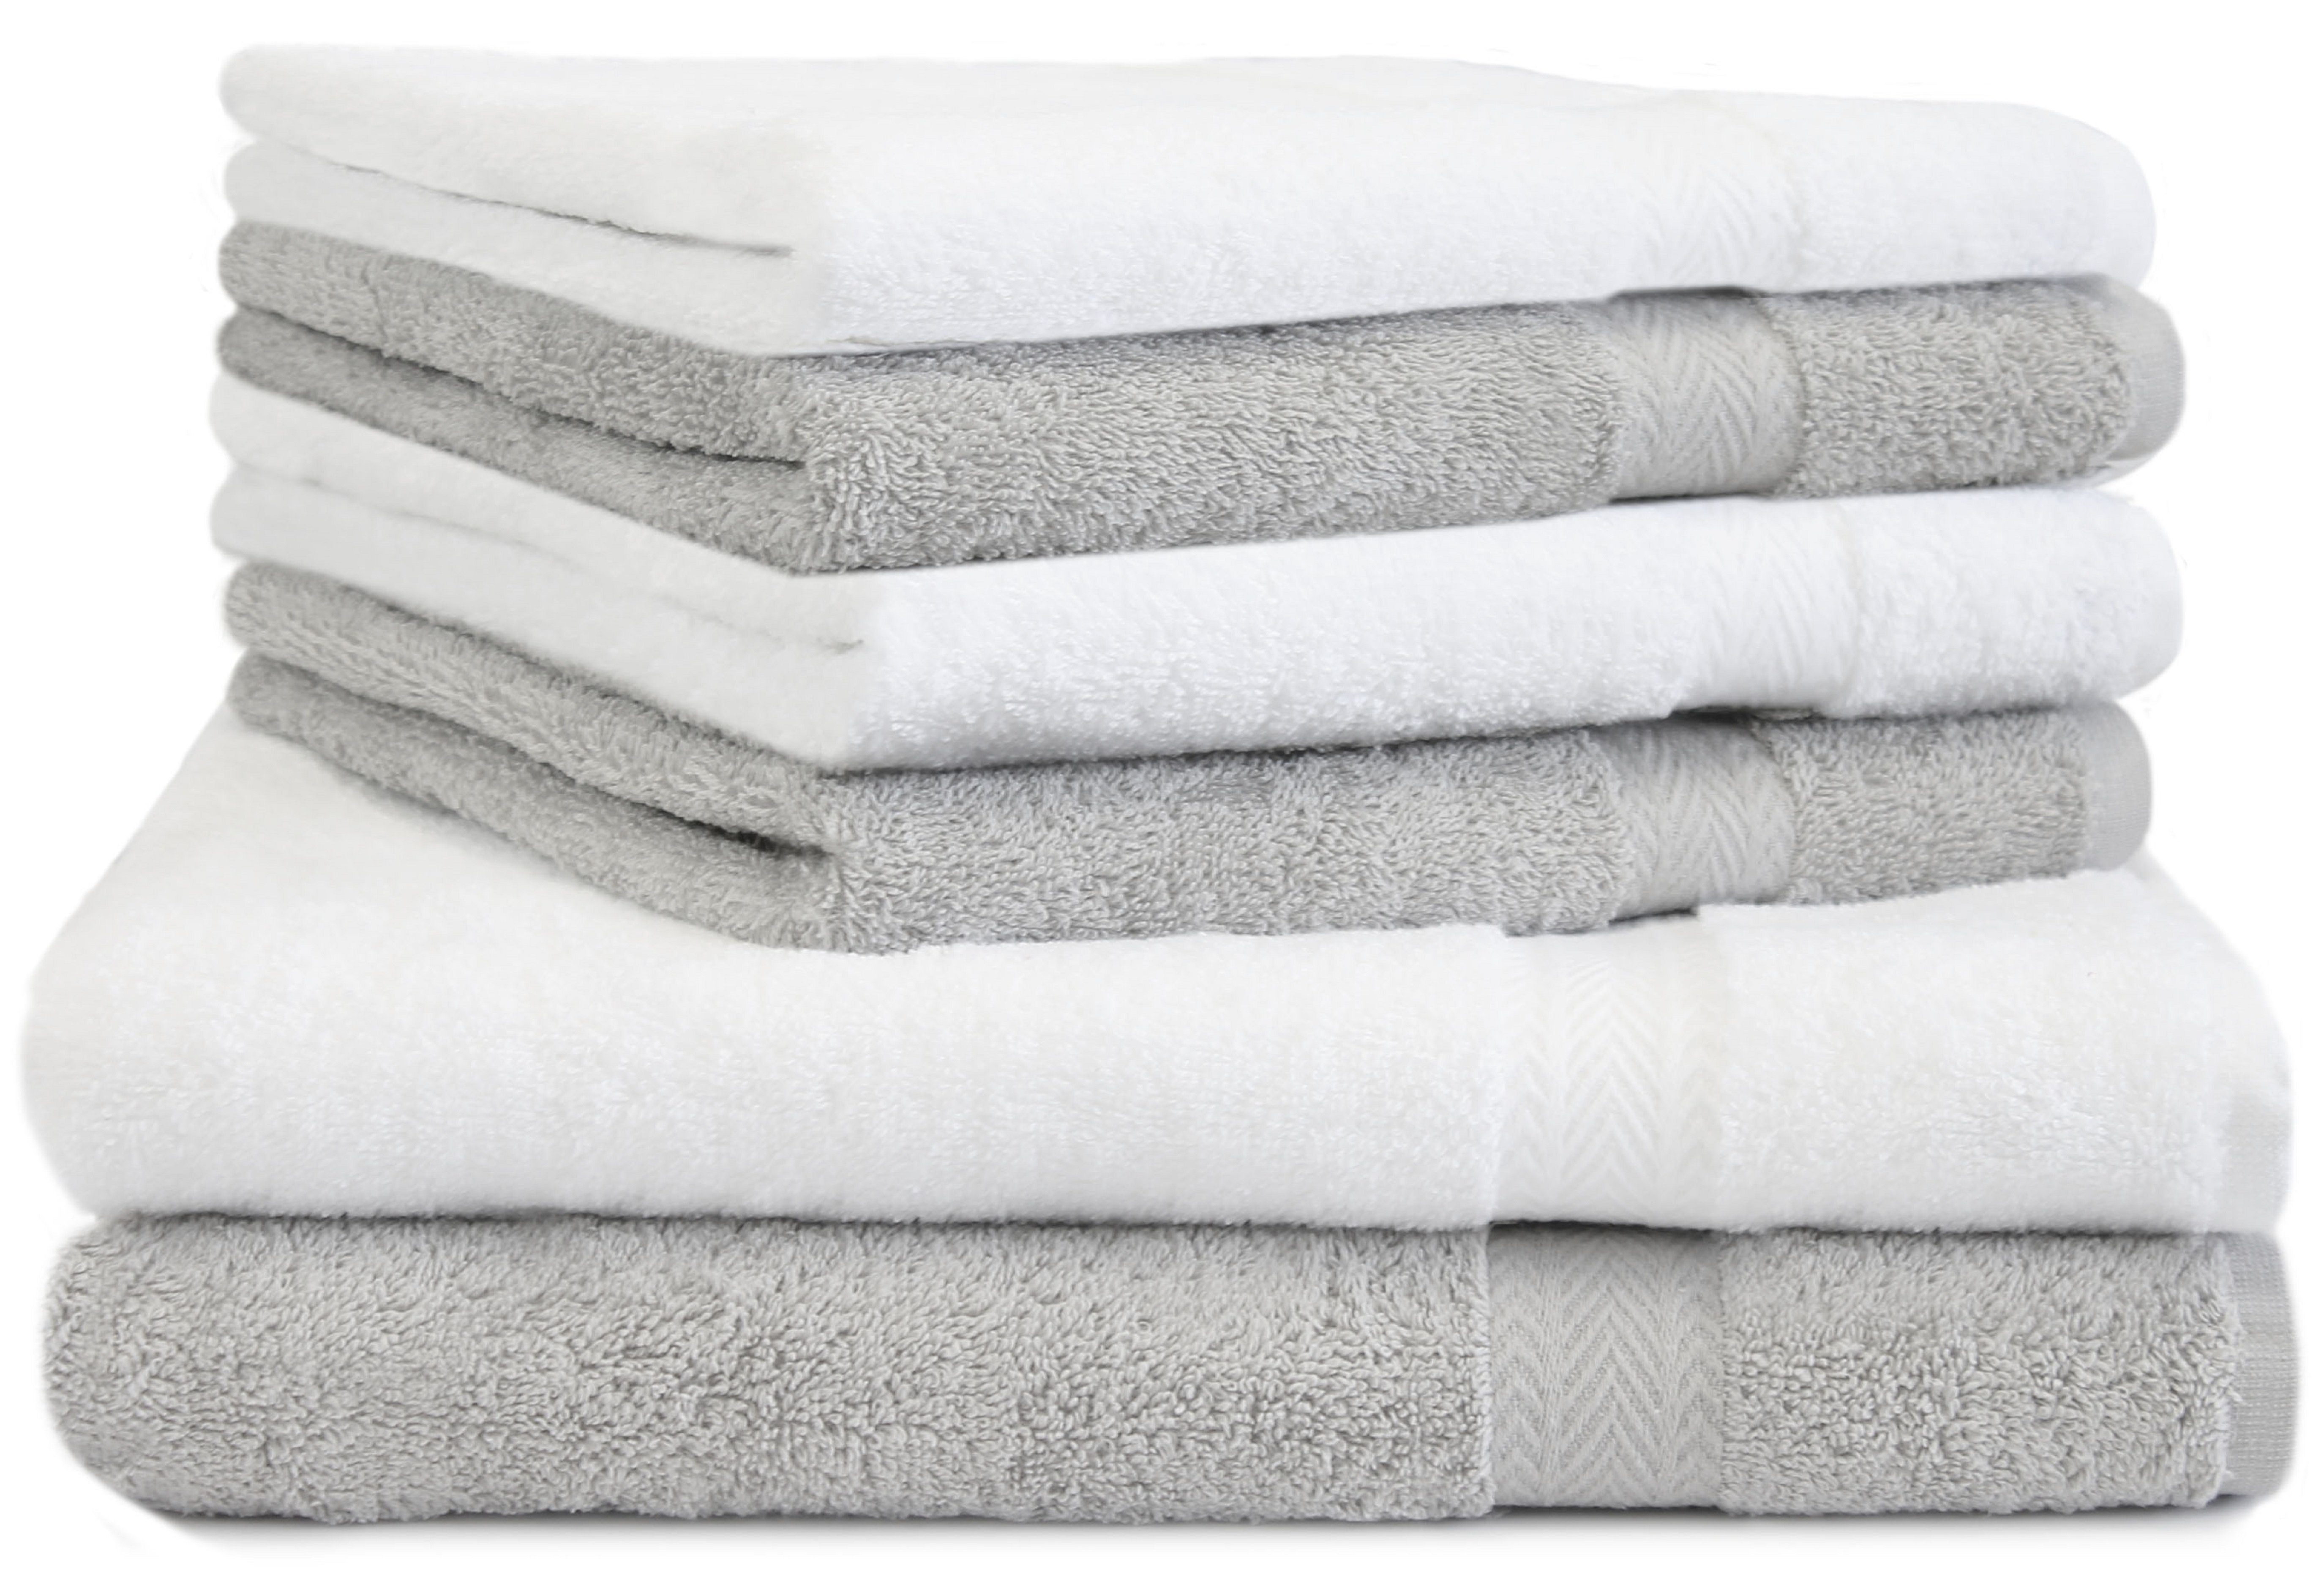 Betz Handtuch Set 6-TLG. Handtuch-Set Premium 100% Baumwolle 2 Duschtücher 4 Handtücher Farbe Silbergrau und weiß, 100% Baumwolle